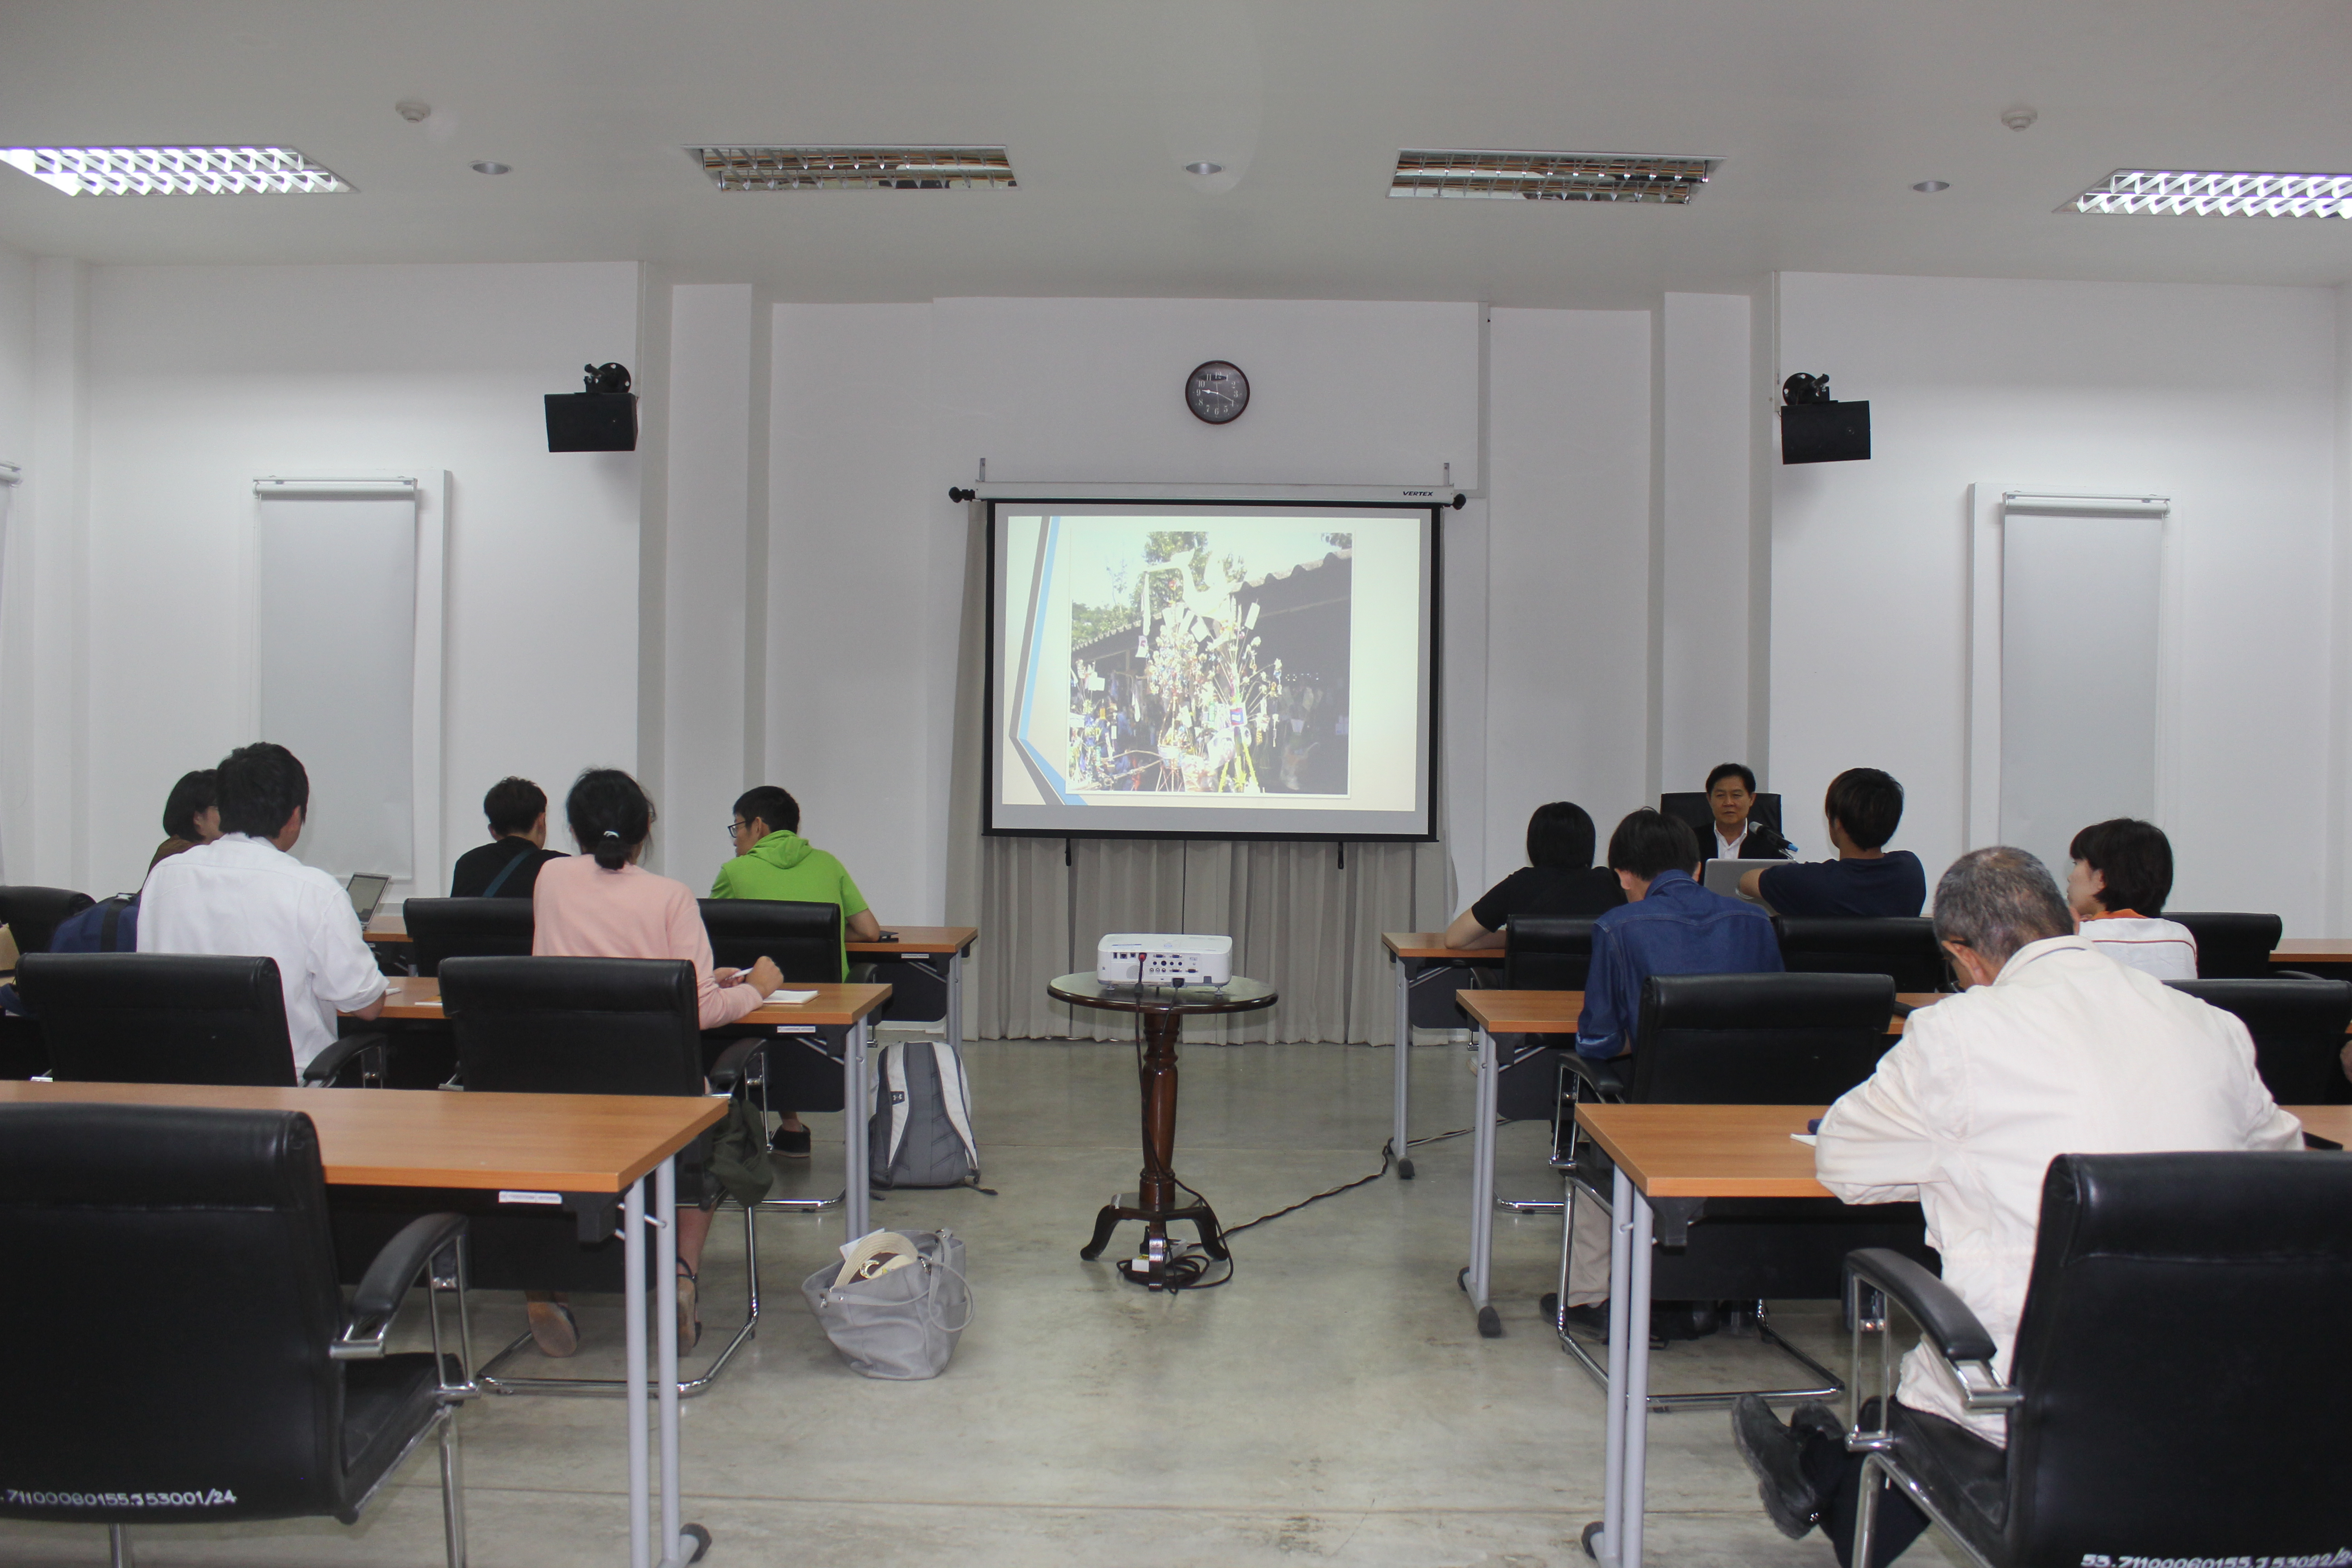 โครงการอบรมเชิงปฏิบัติการด้านศิลปวัฒนธรรมศึกษาสำหรับนักศึกษาและคณาจารย์จาก Chukyo University ประเทศญี่ปุ่น